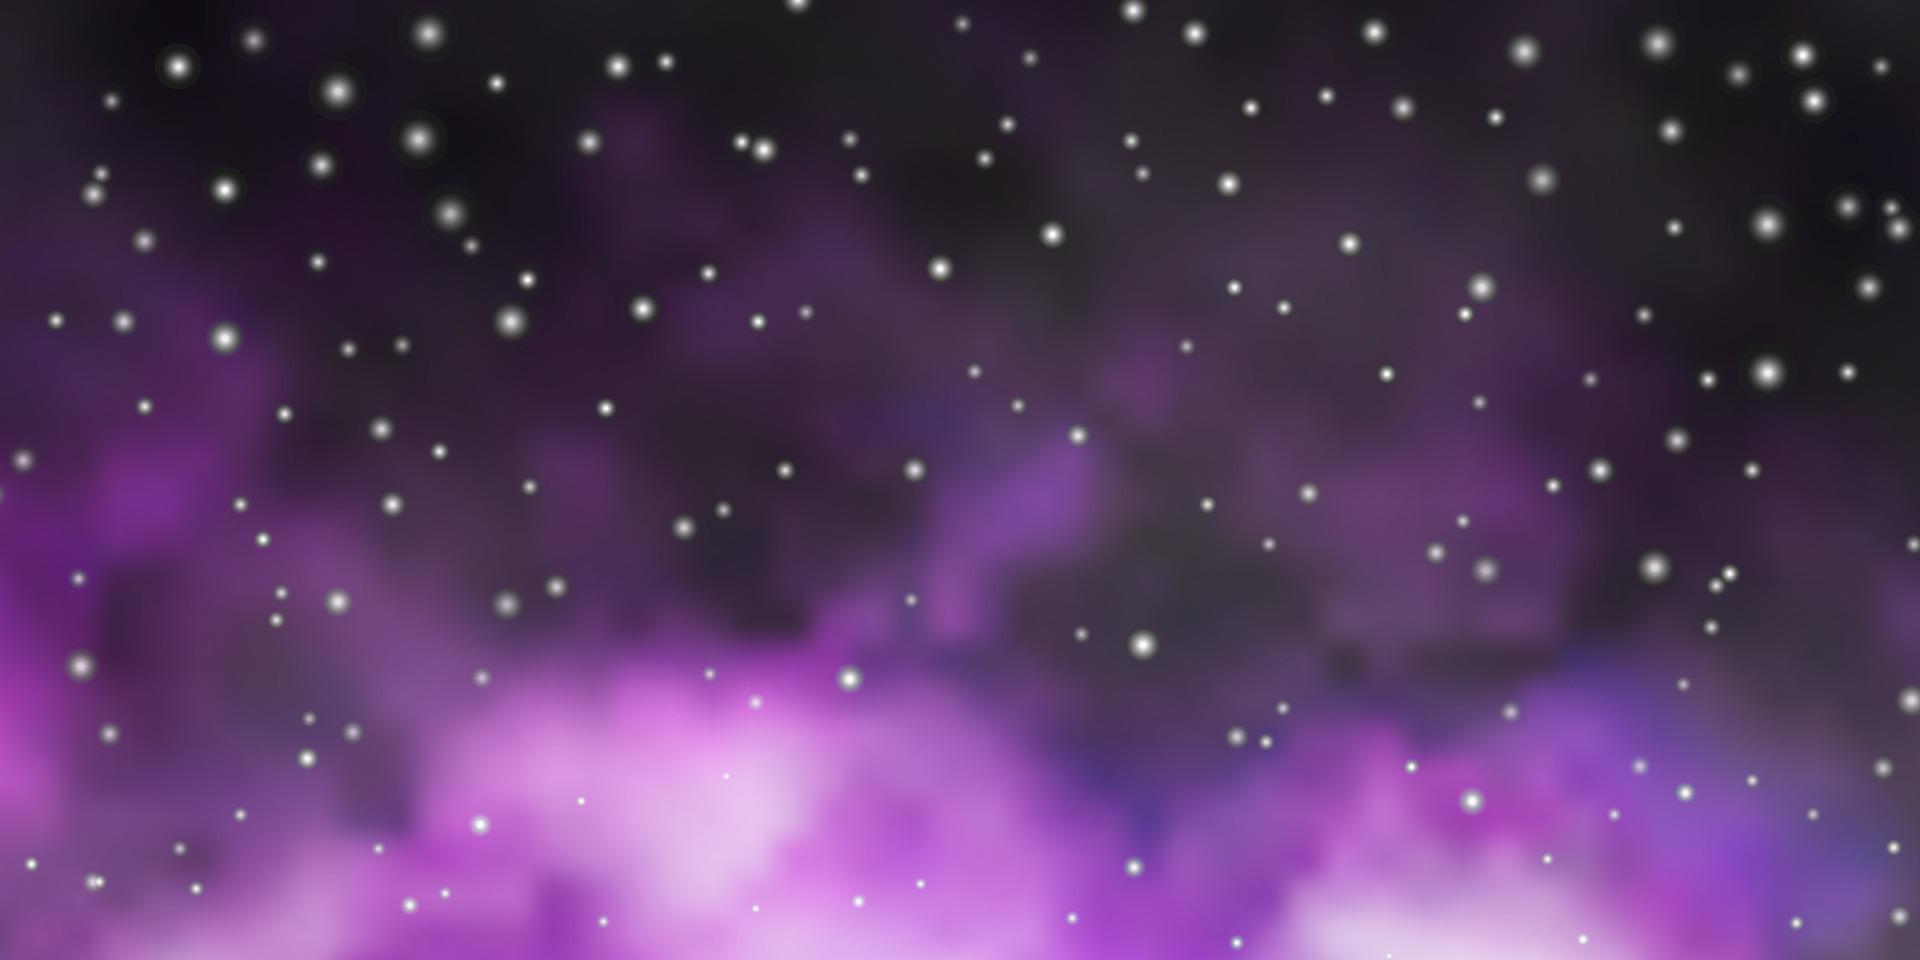 sfondo vettoriale viola chiaro con stelle colorate.